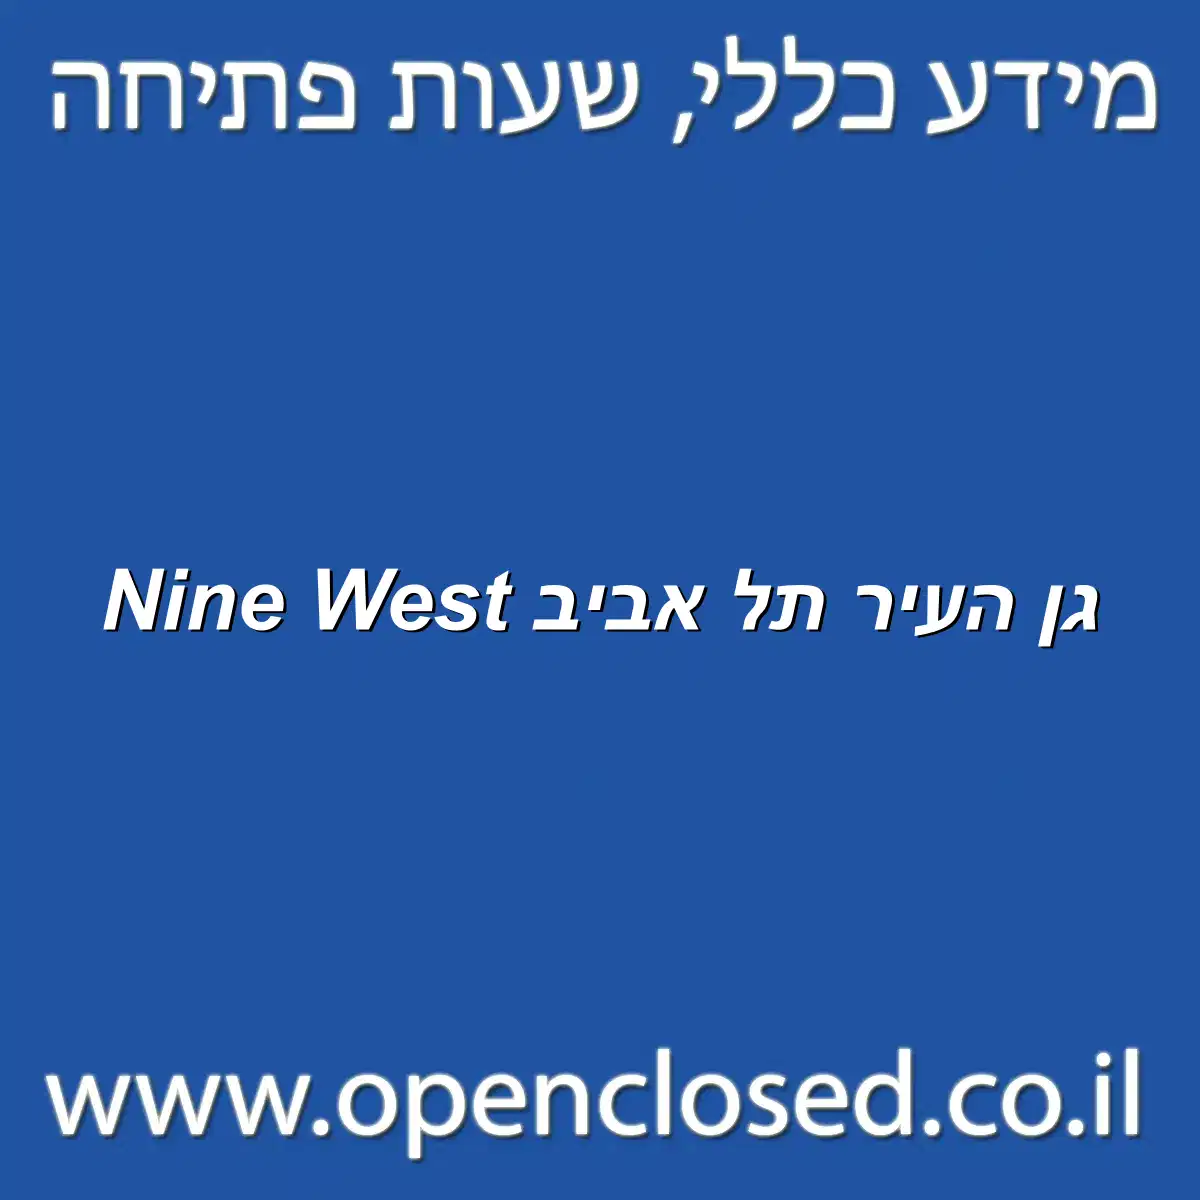 Nine West גן העיר תל אביב